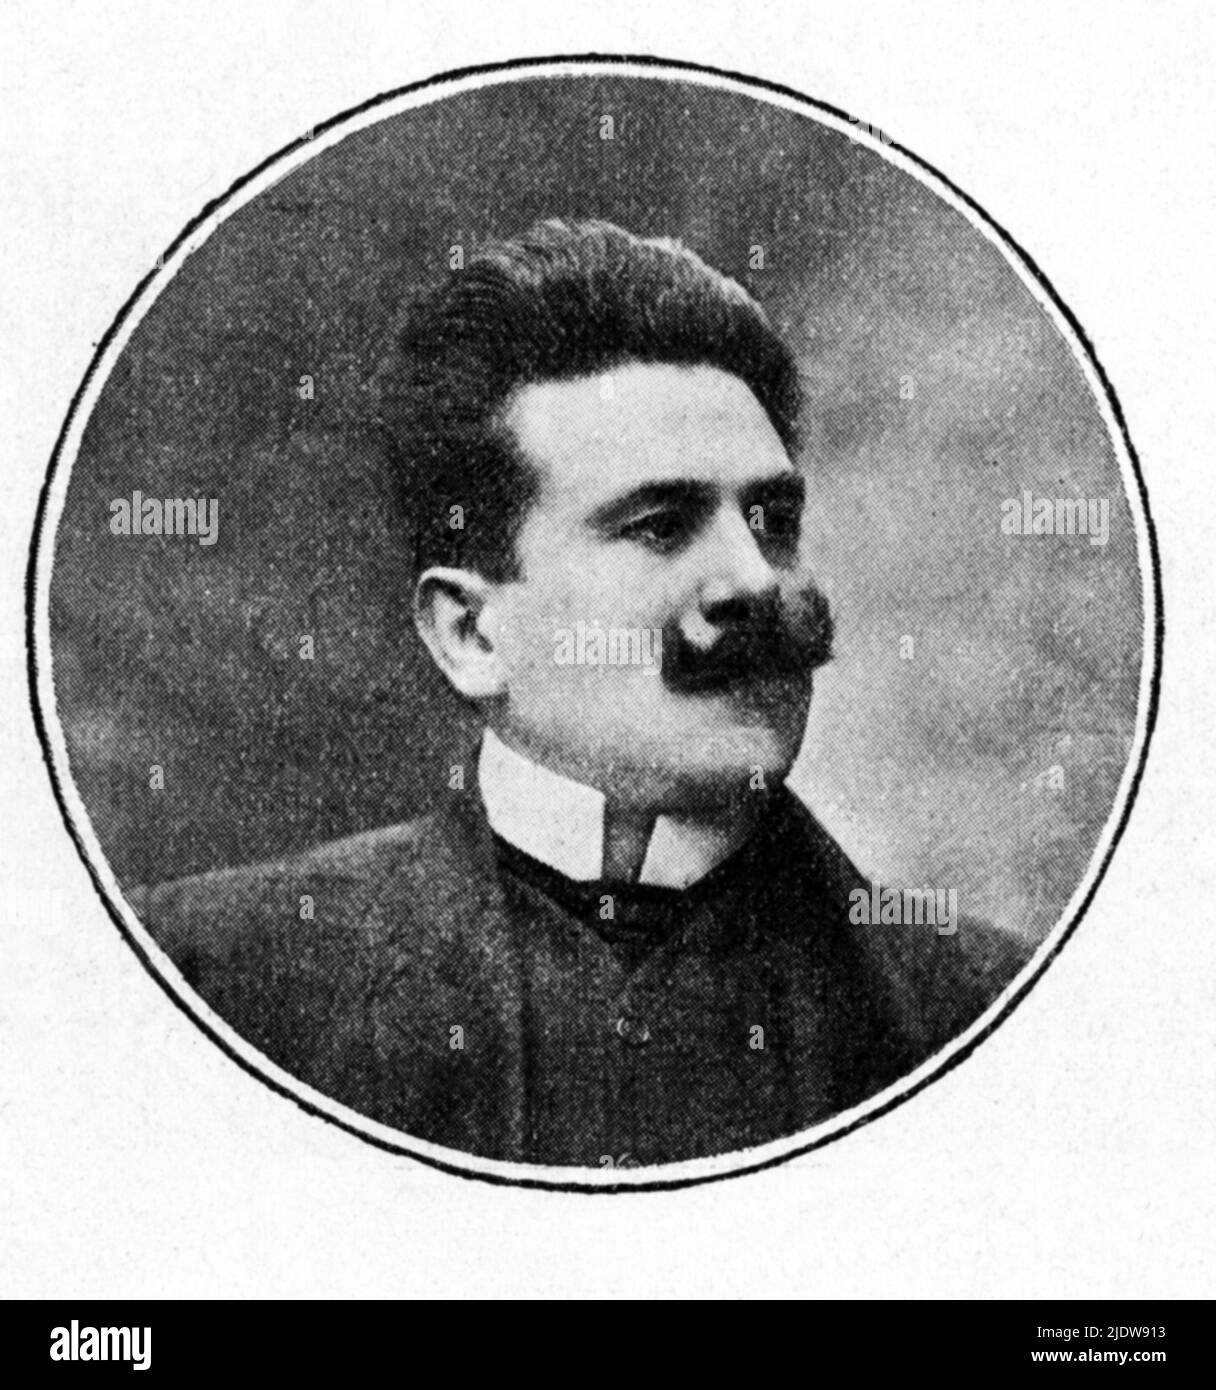 1910 , ITALIEN : der italienische Komponist und Dirigent GIANNI BUCCERI ( 1872 - 1953 ) - MUSICA - COMPOSITORE - DIRETTORE D' ORCHESTRA - MUSIK - Klassik - Portrait - ritratto - Schnurrbart - Baffi - colletto - Kragen ---- Archivio GBB Stockfoto